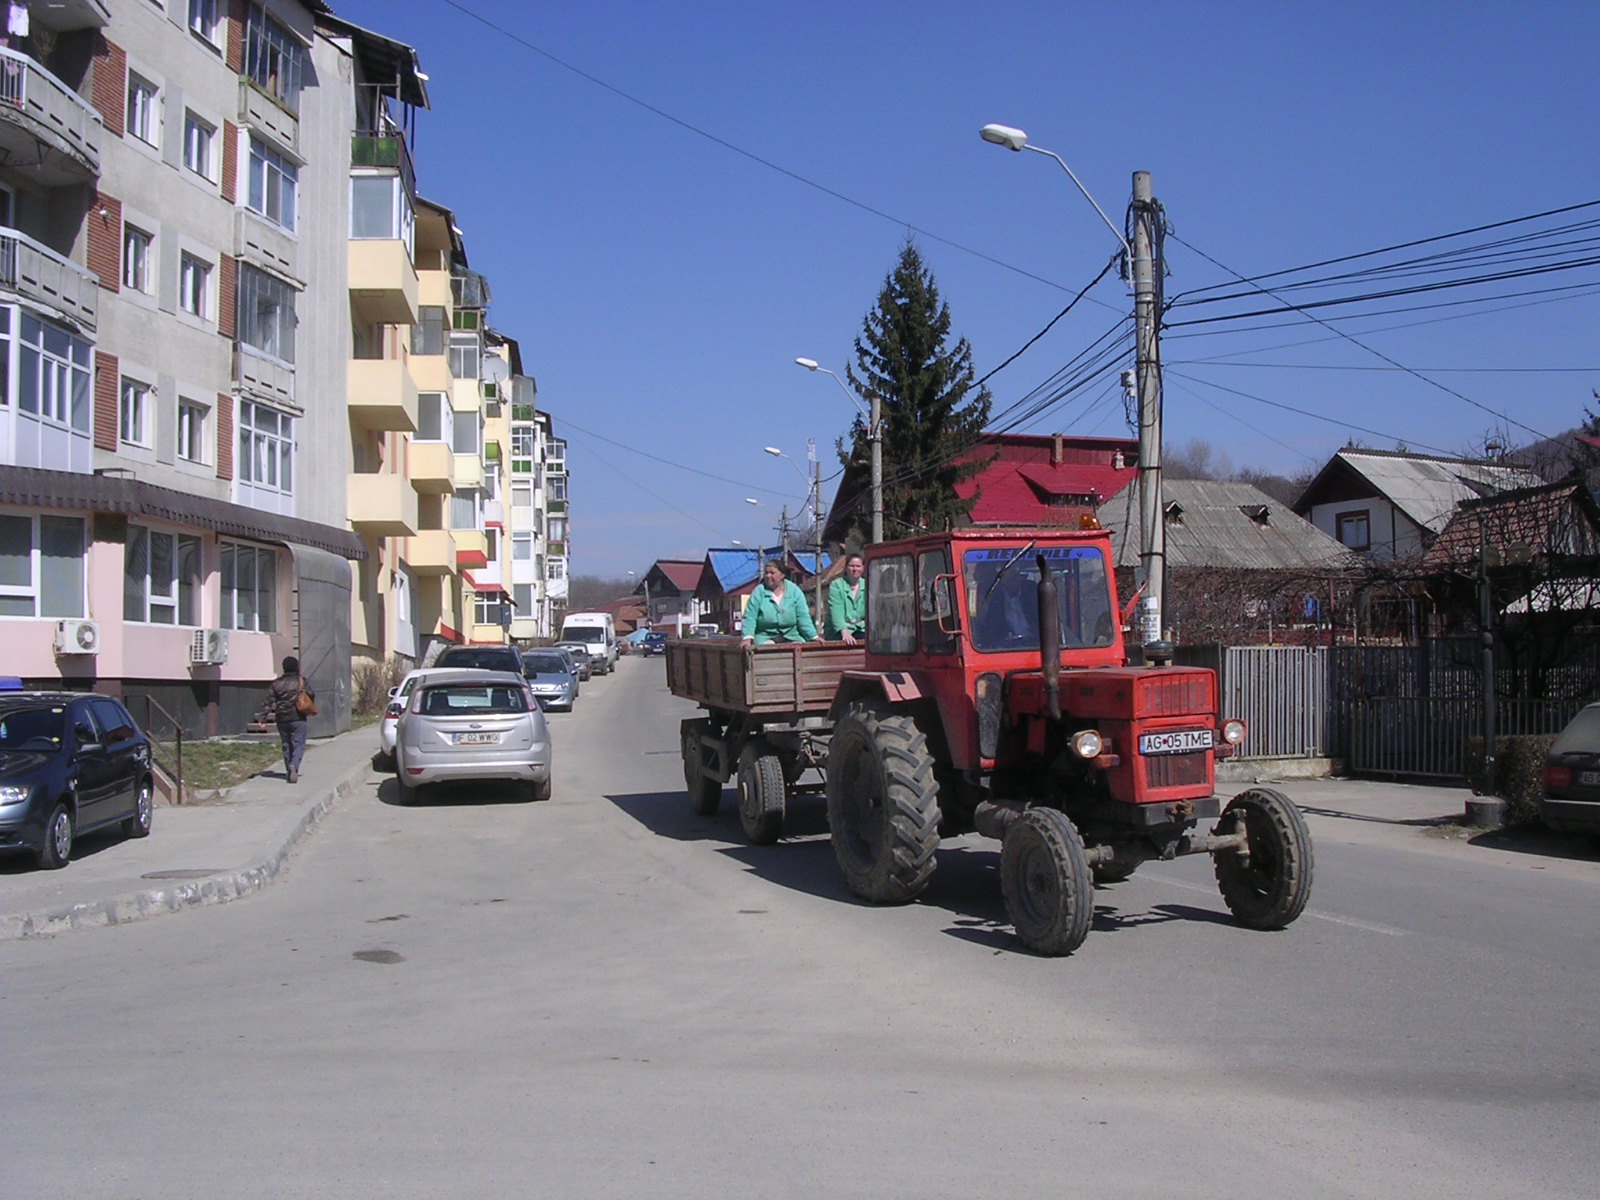 UTB 650 tractor Curtea de Arges Romania, March 2011 | Flickr ...